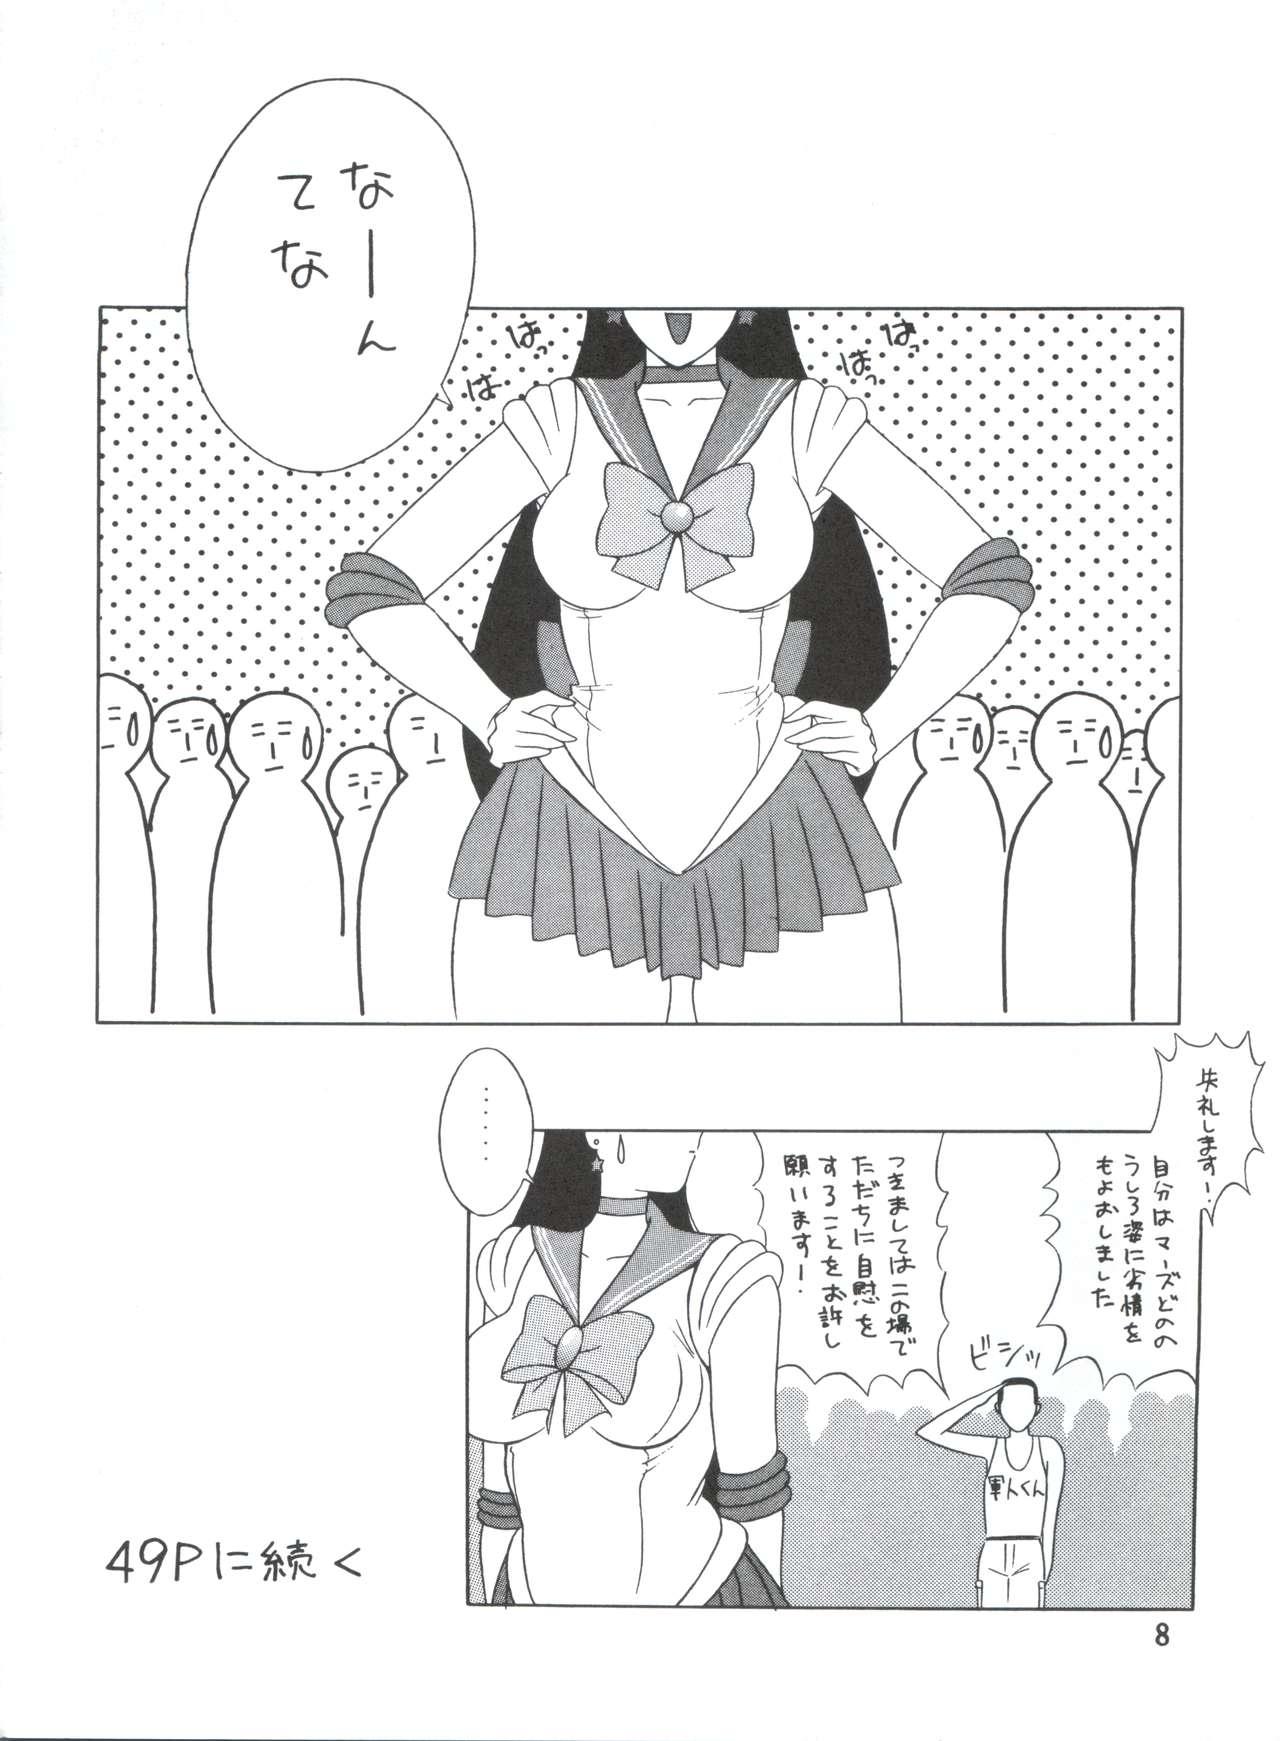 Hard Voice of Mars - Sailor moon Urusei yatsura Dirty pair Maison ikkoku Pale - Page 7